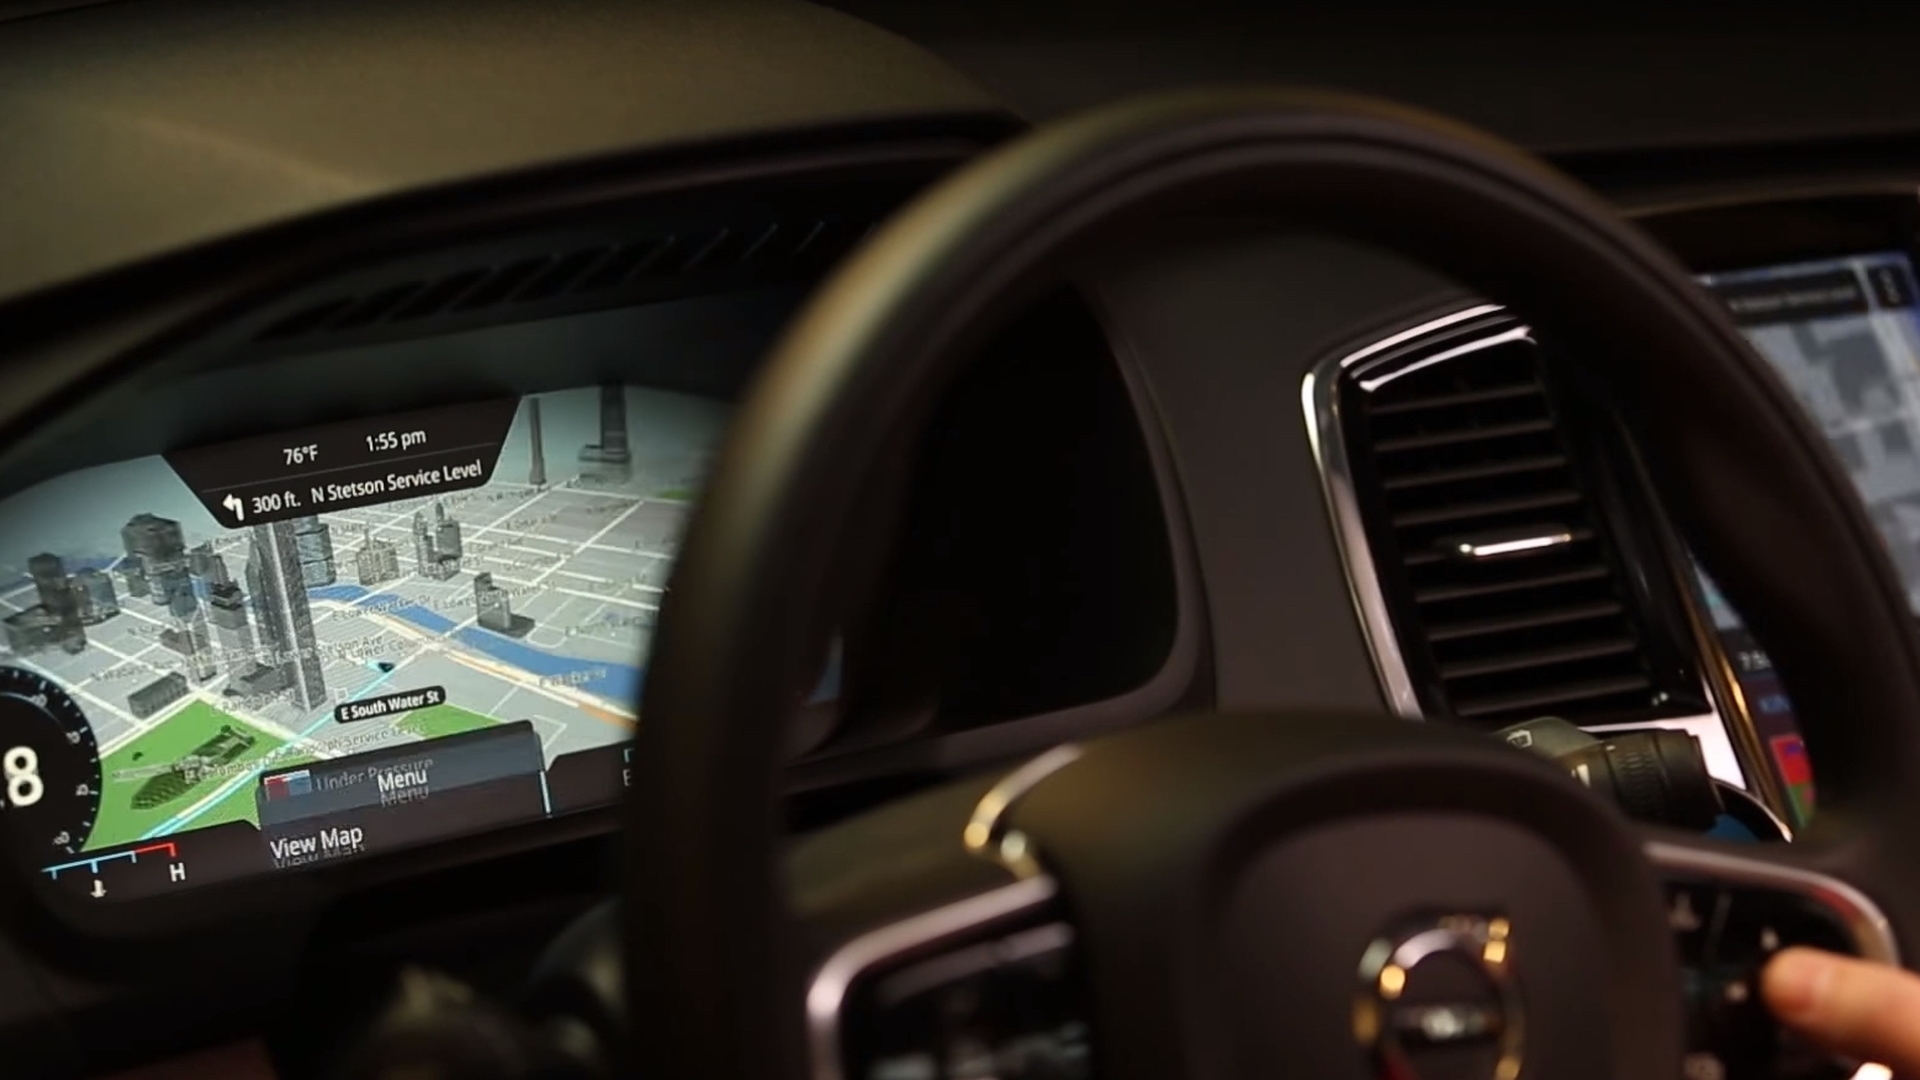 Garmin next-generation infotainment system previewed in future Volvo interior